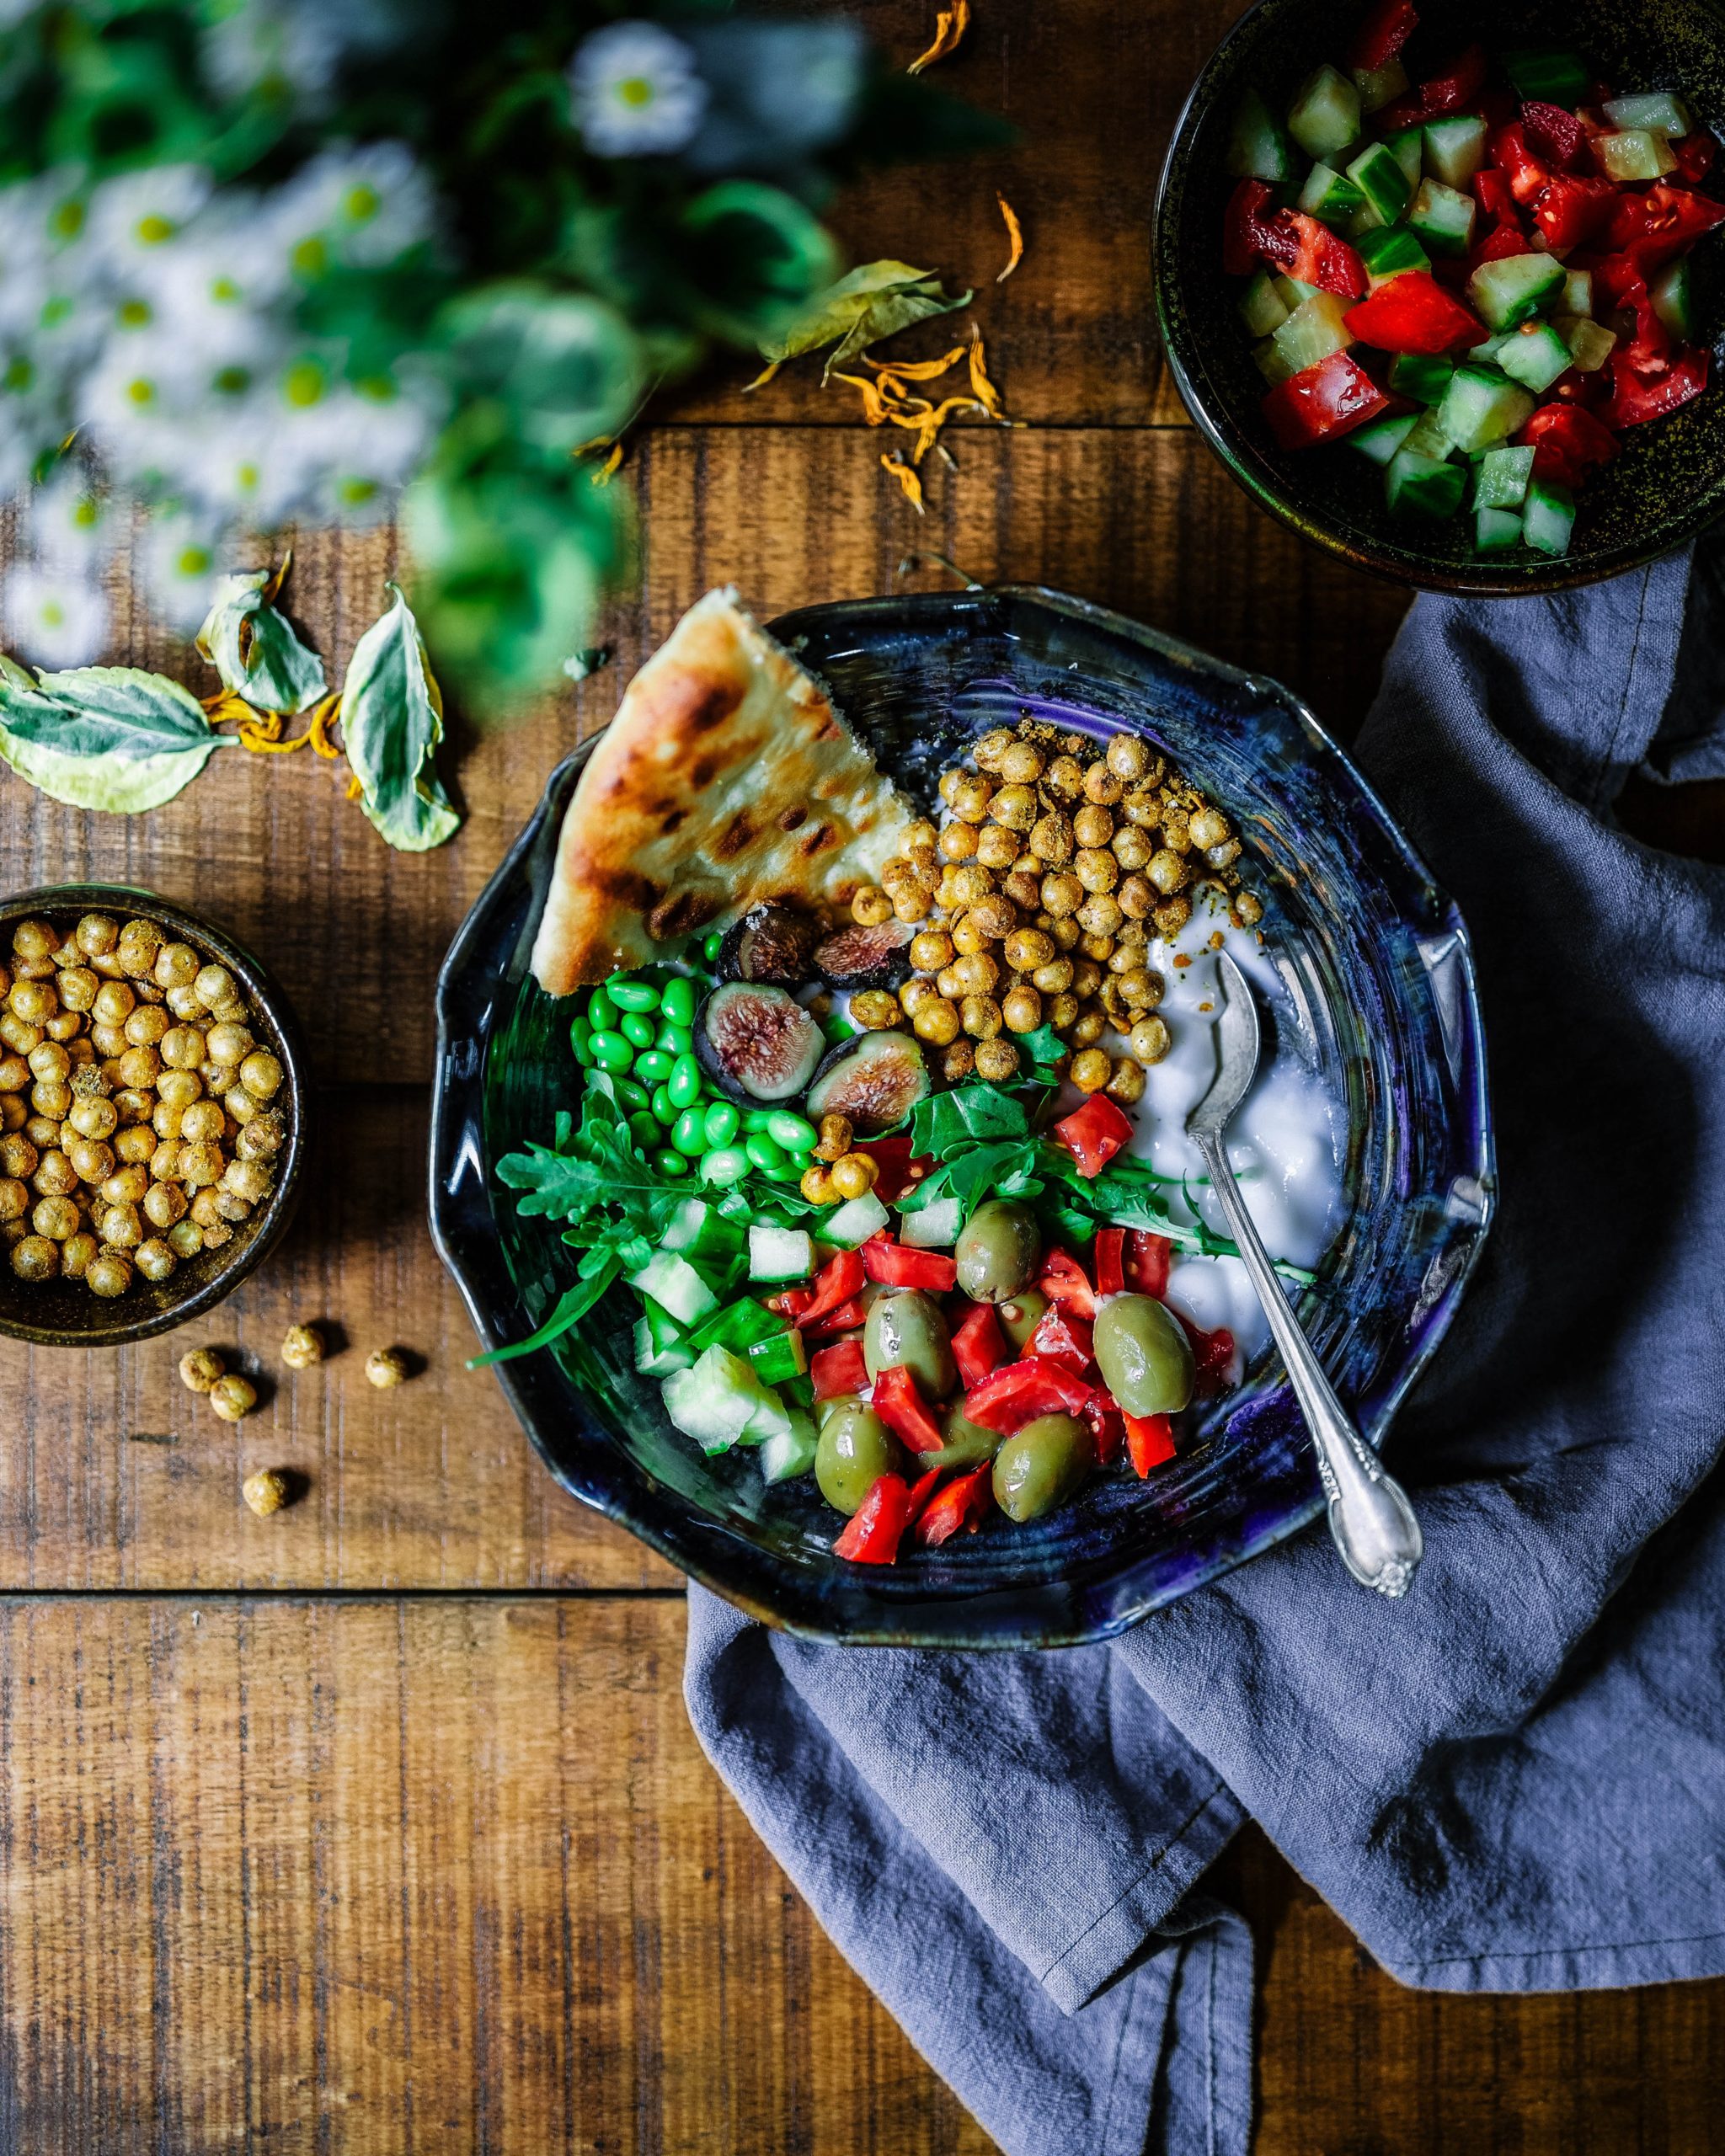 Kuvassa näkyy kulhollinen värikästä kasvisruokaa. Kulho on puisella pöydällä ja sen alla on siniharmaa lautasliina.